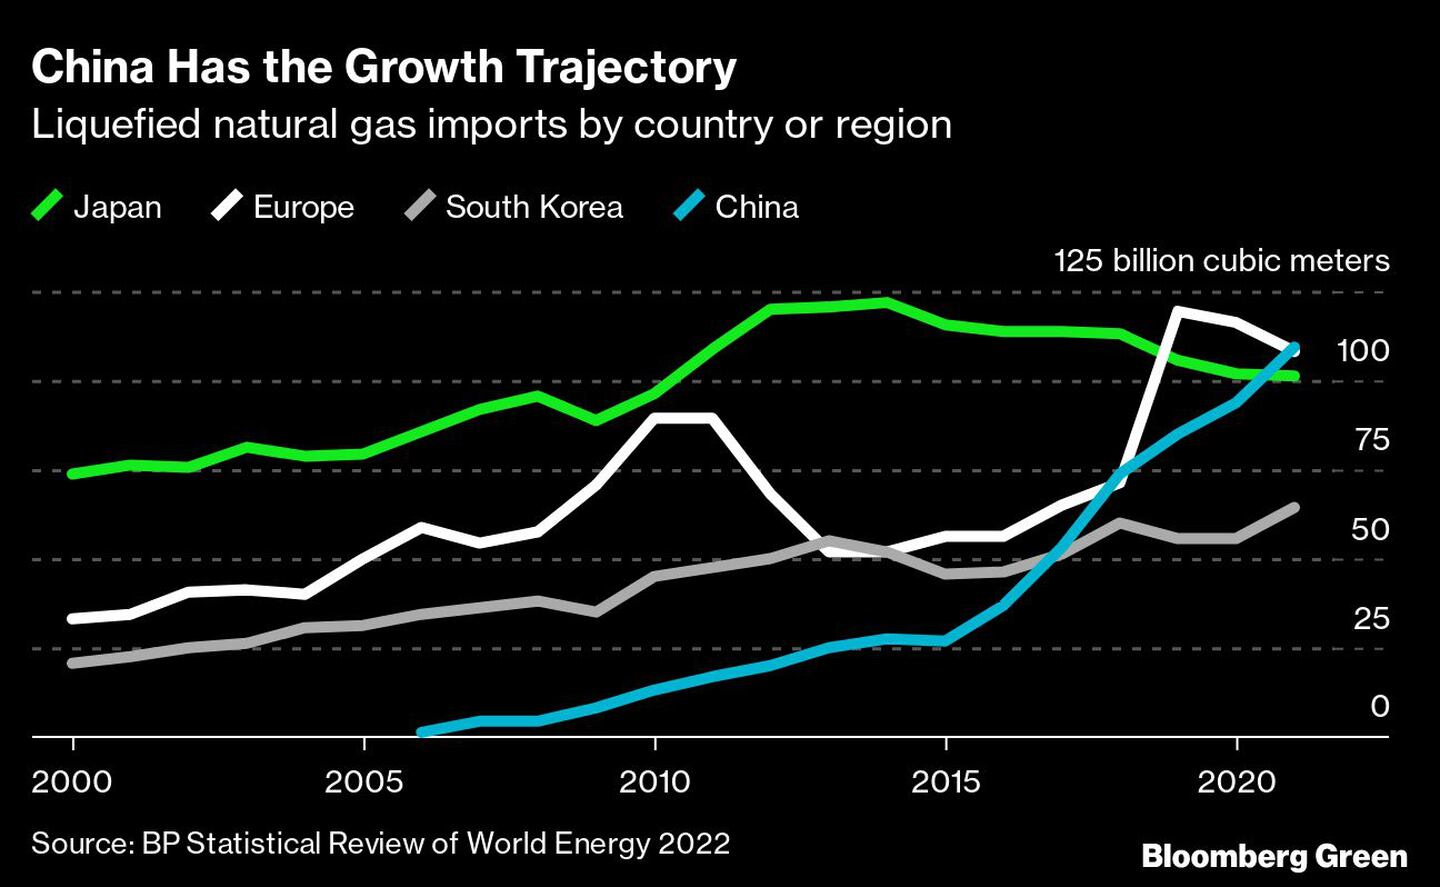 China Tiene la trayectoria de crecimiento
Importaciones de gas natural licuado por país o región
Verde: Japón, Blanco: Europa, Gris: Corea del Sur, Azul: China. 125 mil millones de metros cúbicosdfd